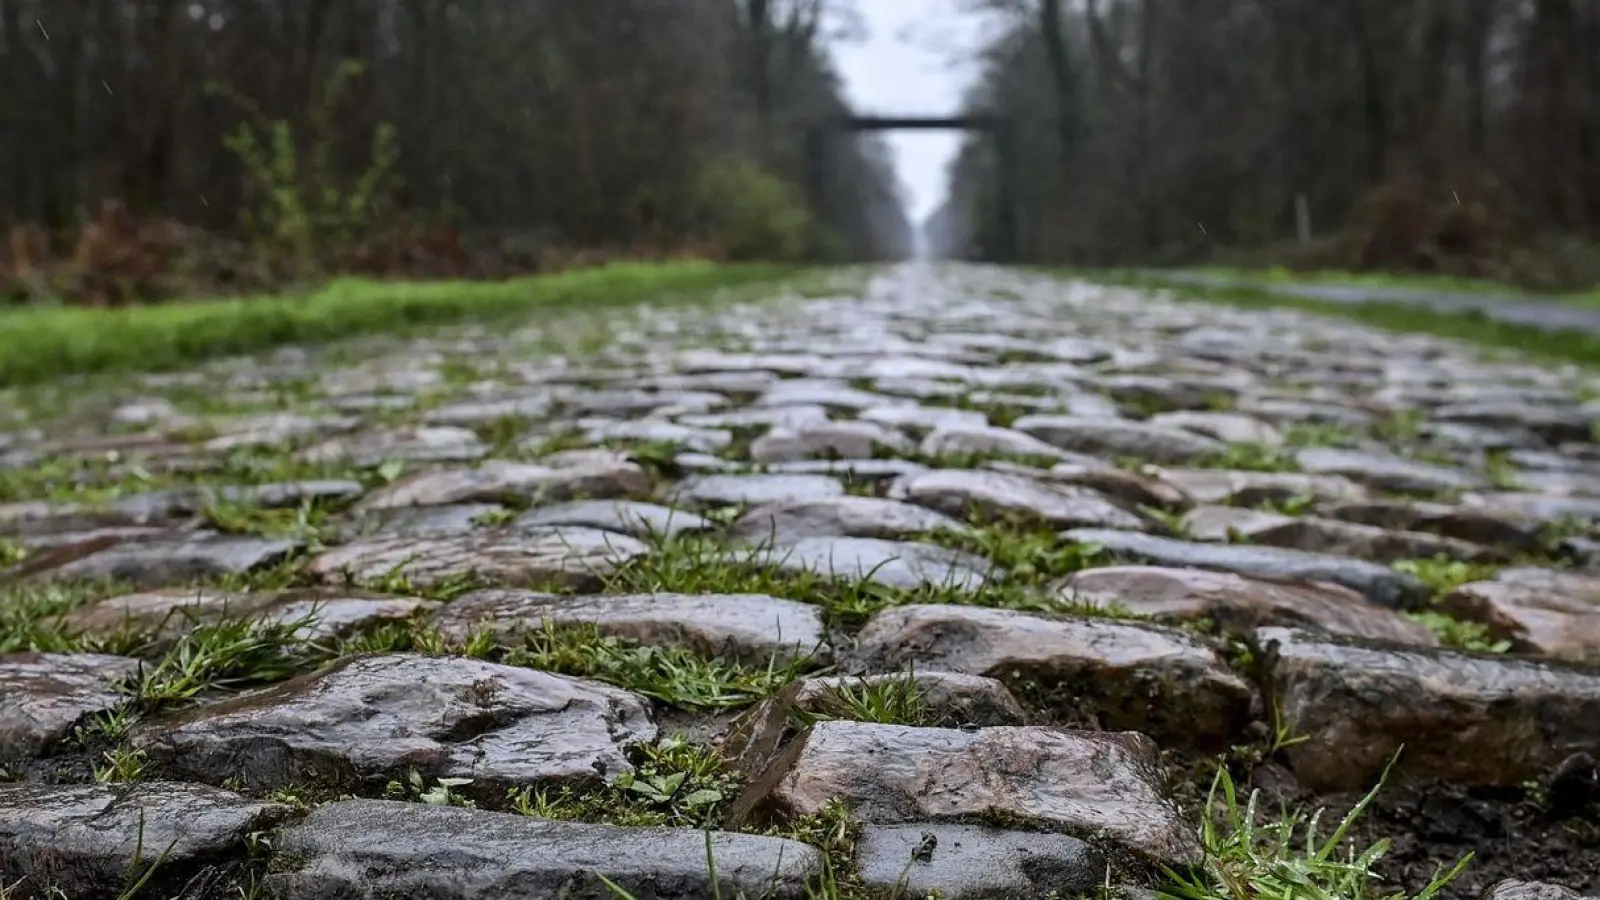 Der Rad-Klassiker Paris-Roubaix findet am Sonntag statt. Vor dem Arenberg-Wald soll nun eine Schikane das Fahrerfeld abbremsen. (Foto: Dirk Waem/Belga/dpa)